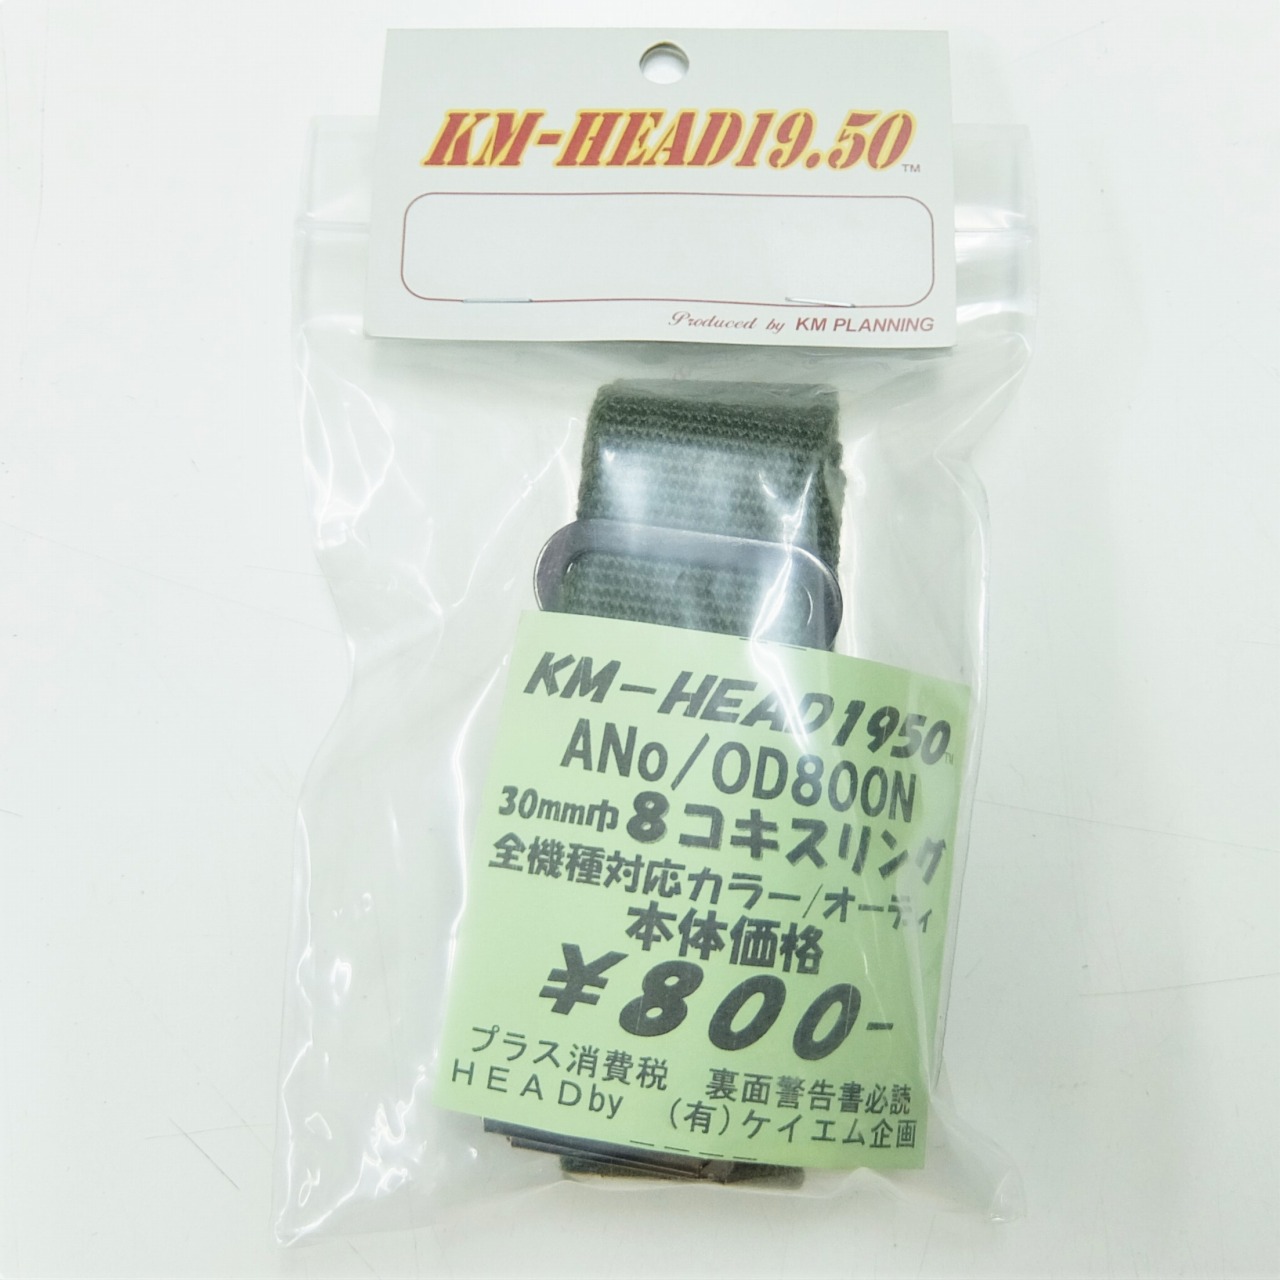 KM企画 HEAD1950 30mm巾 8コキスリング OD